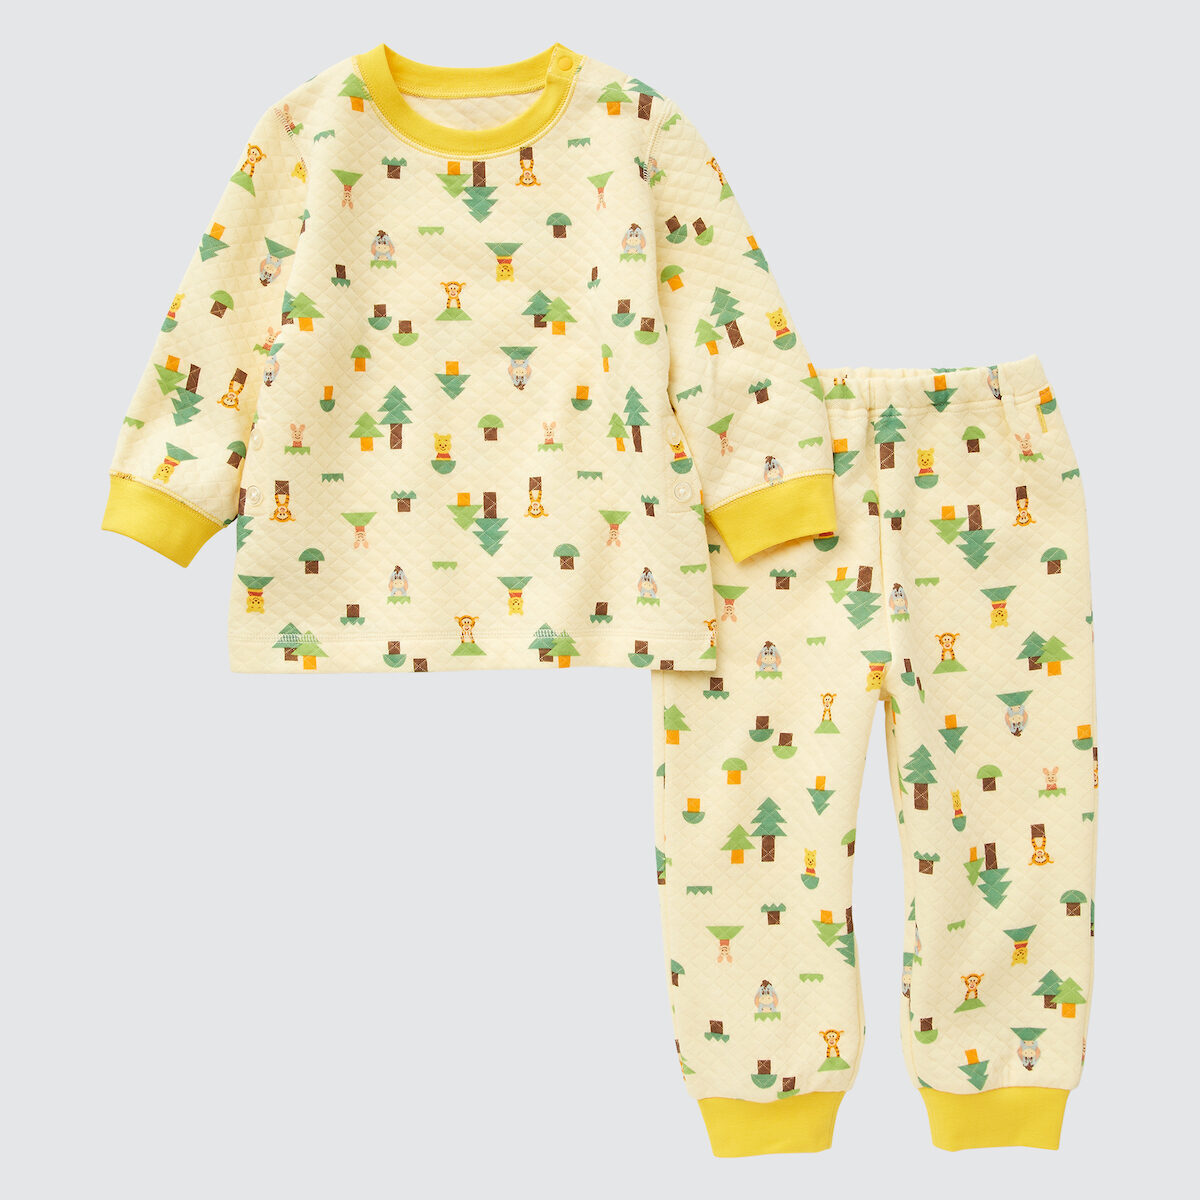 ユニクロ】木製玩具「Disney KIDEA」がパジャマに！ 限定特別デザインのミッキーorミニーKIDEAもプレゼント |